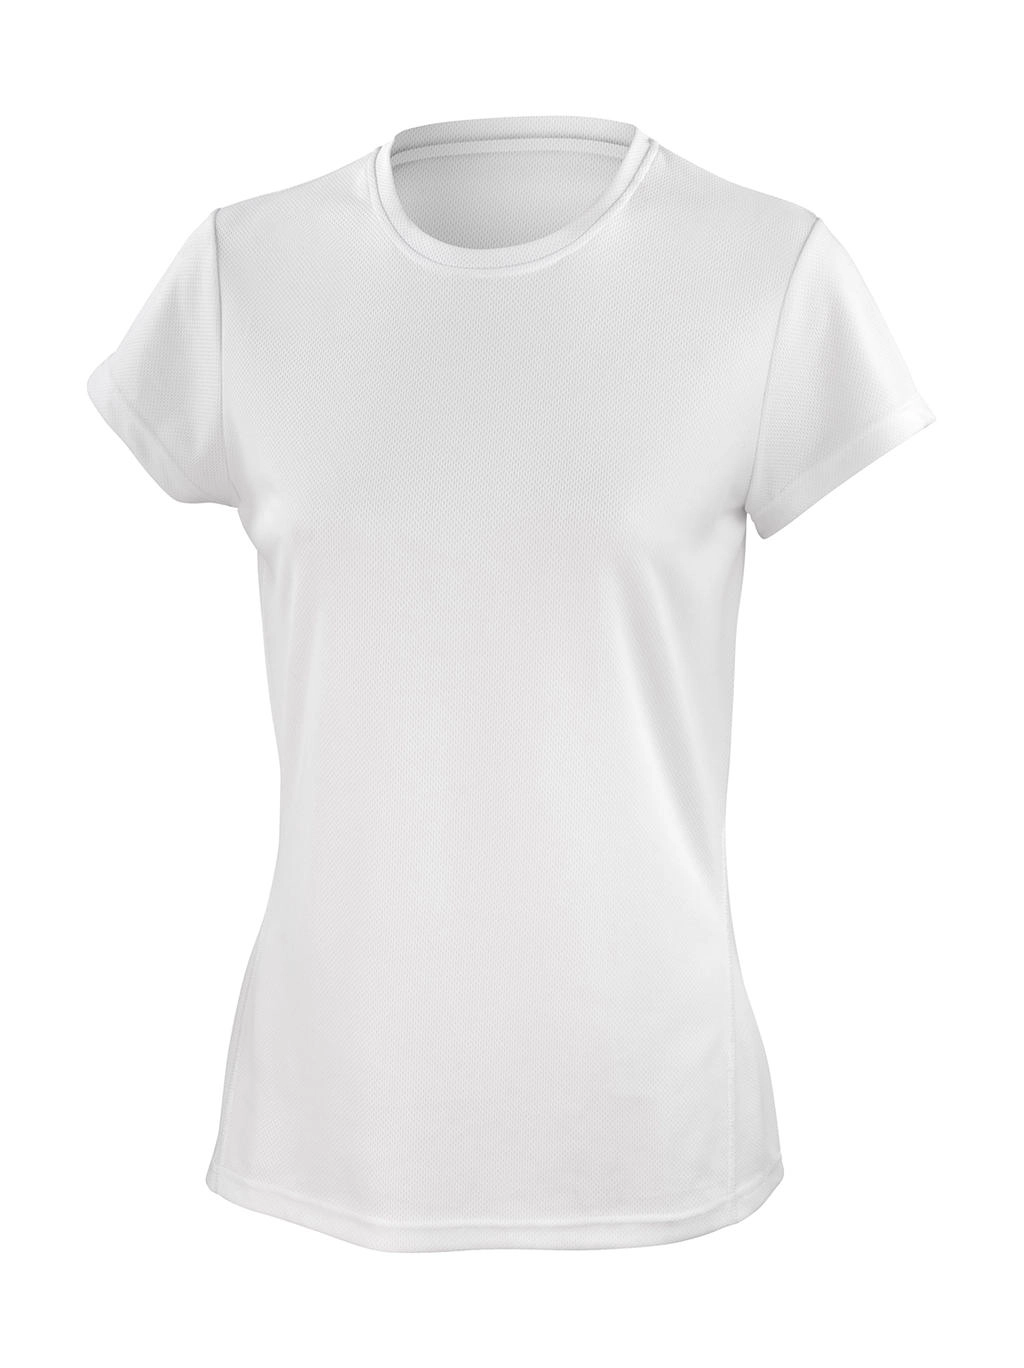 Ladies` Performance T-Shirt zum Besticken und Bedrucken in der Farbe White mit Ihren Logo, Schriftzug oder Motiv.